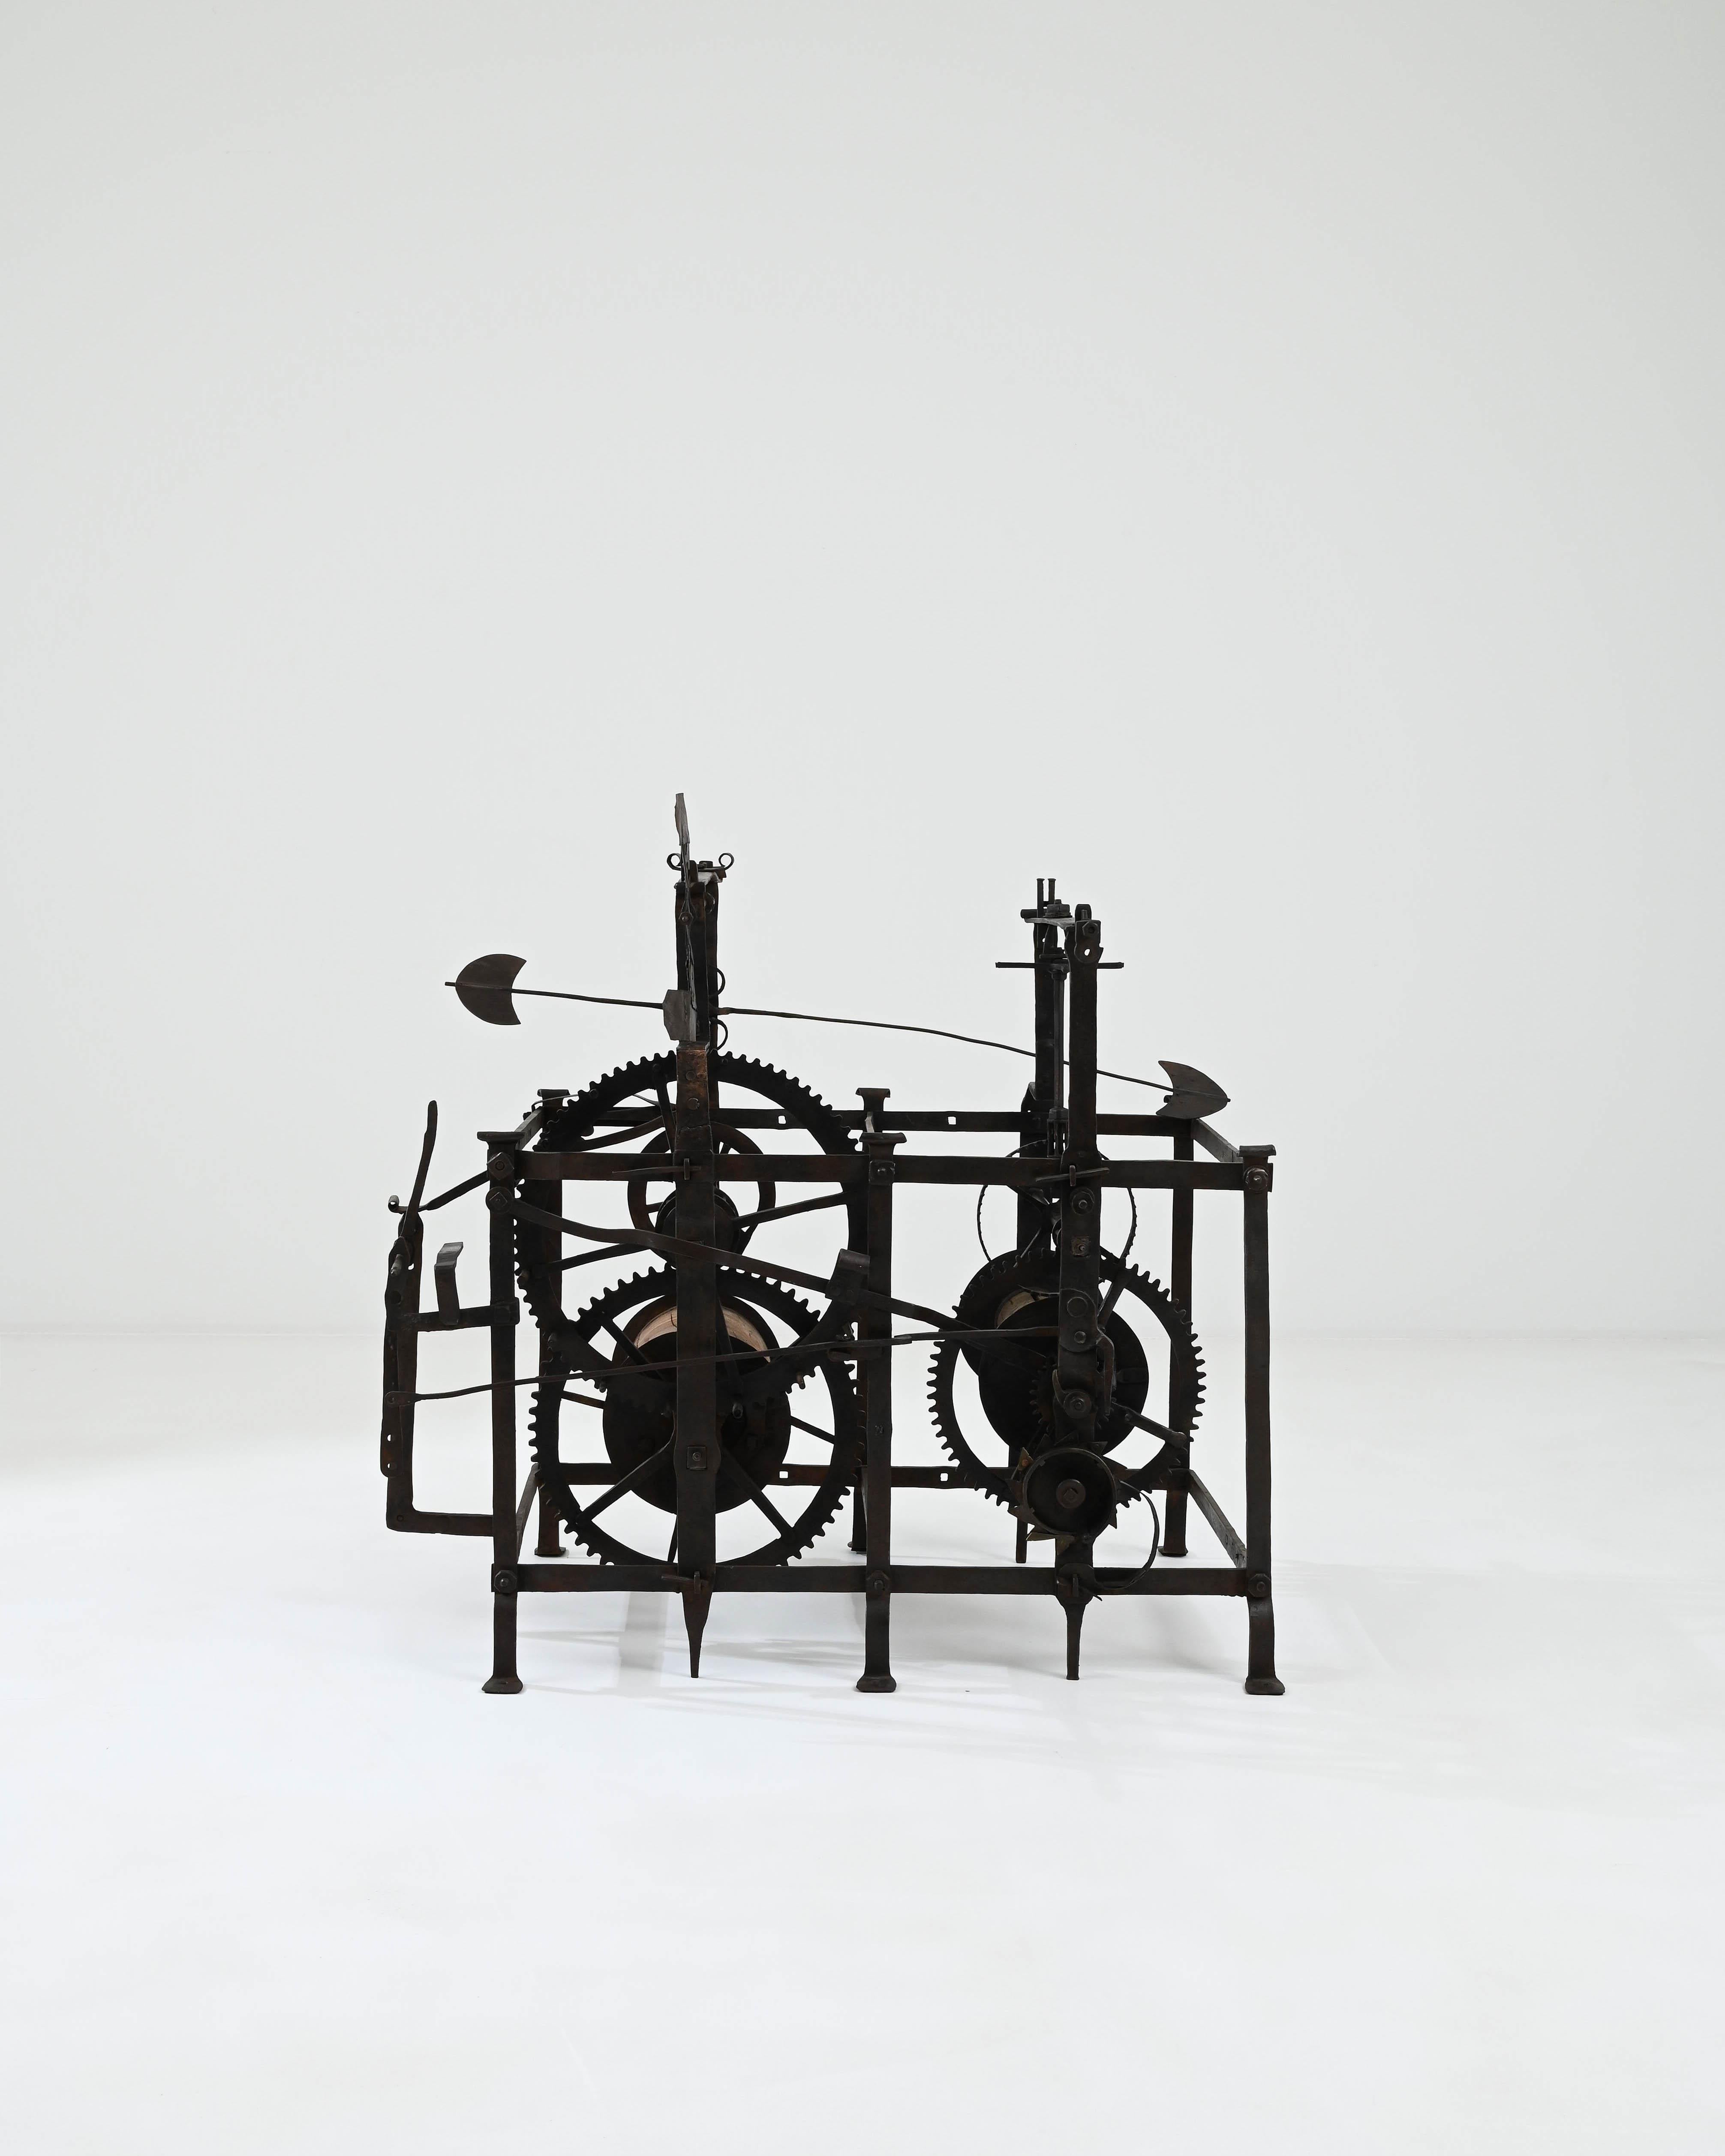 La silhouette sculpturale de ce mécanisme d'horloge en fer ancien attire le regard et enflamme l'imagination. Fabriquée en France dans les années 1700, cette pièce offre une tranche d'histoire : l'une des inventions qui ont inauguré l'ère